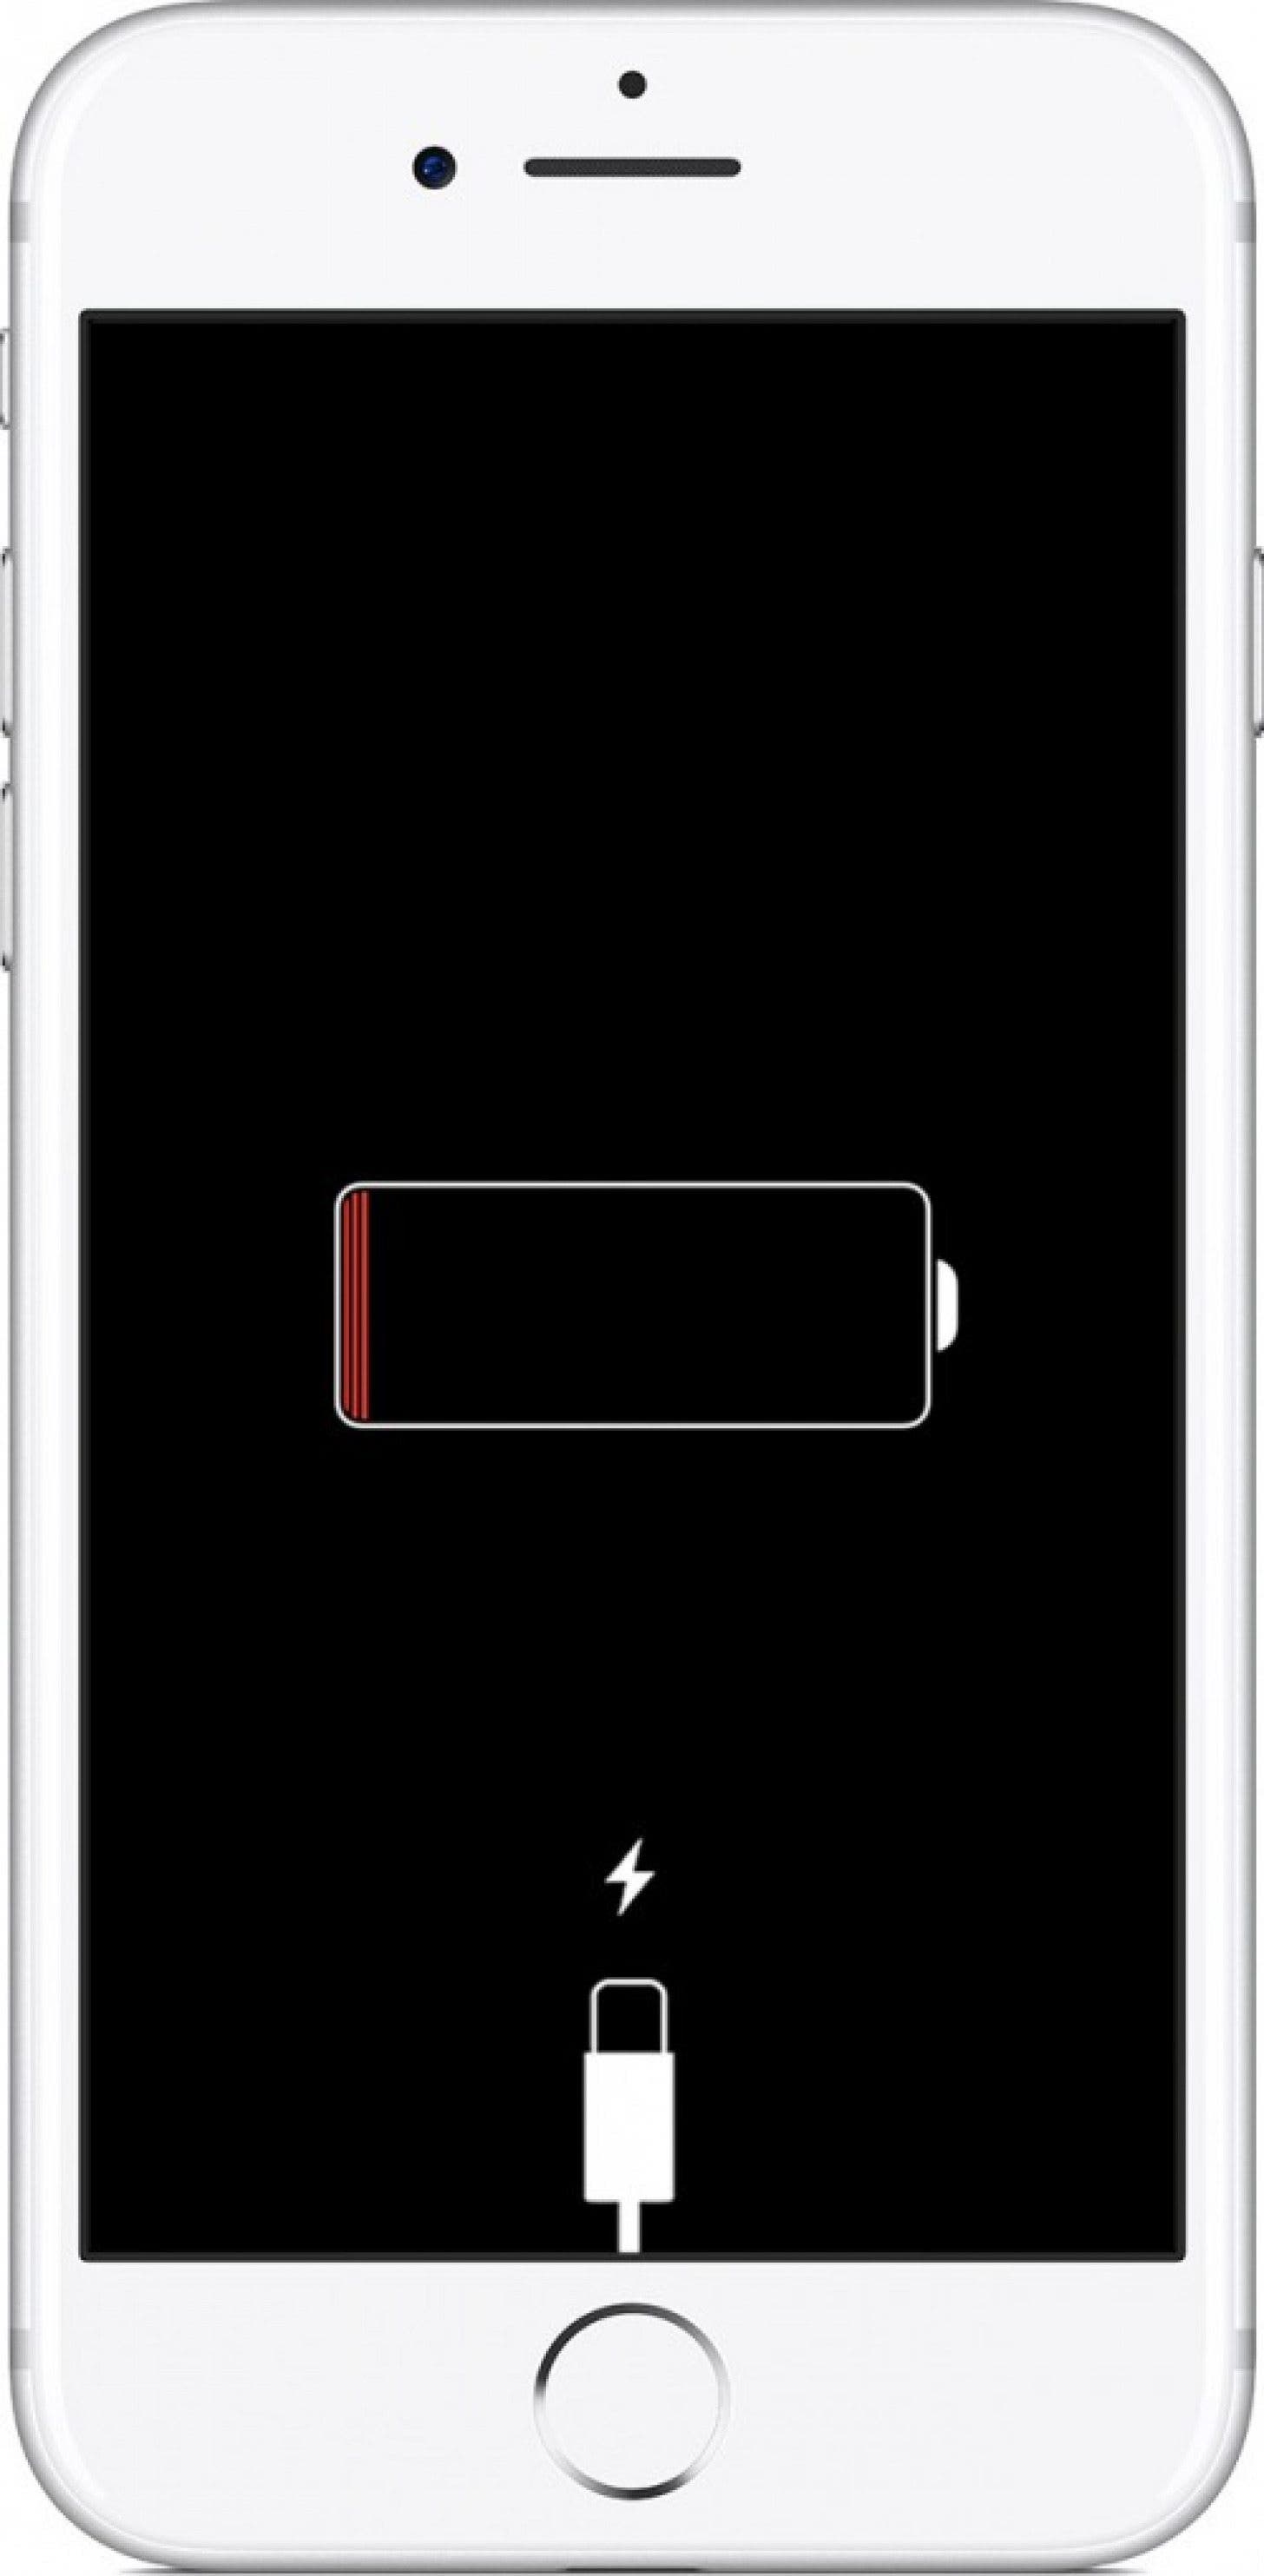 यह देखने के लिए कि क्या यह चार्ज होता है, अपने फोन को प्लग इन करके एक मृत बैटरी को हटा दें; आपका प्राथमिक चार्जर या केबल टूट जाने की स्थिति में आप एक अलग चार्जर आज़माना चाह सकते हैं।